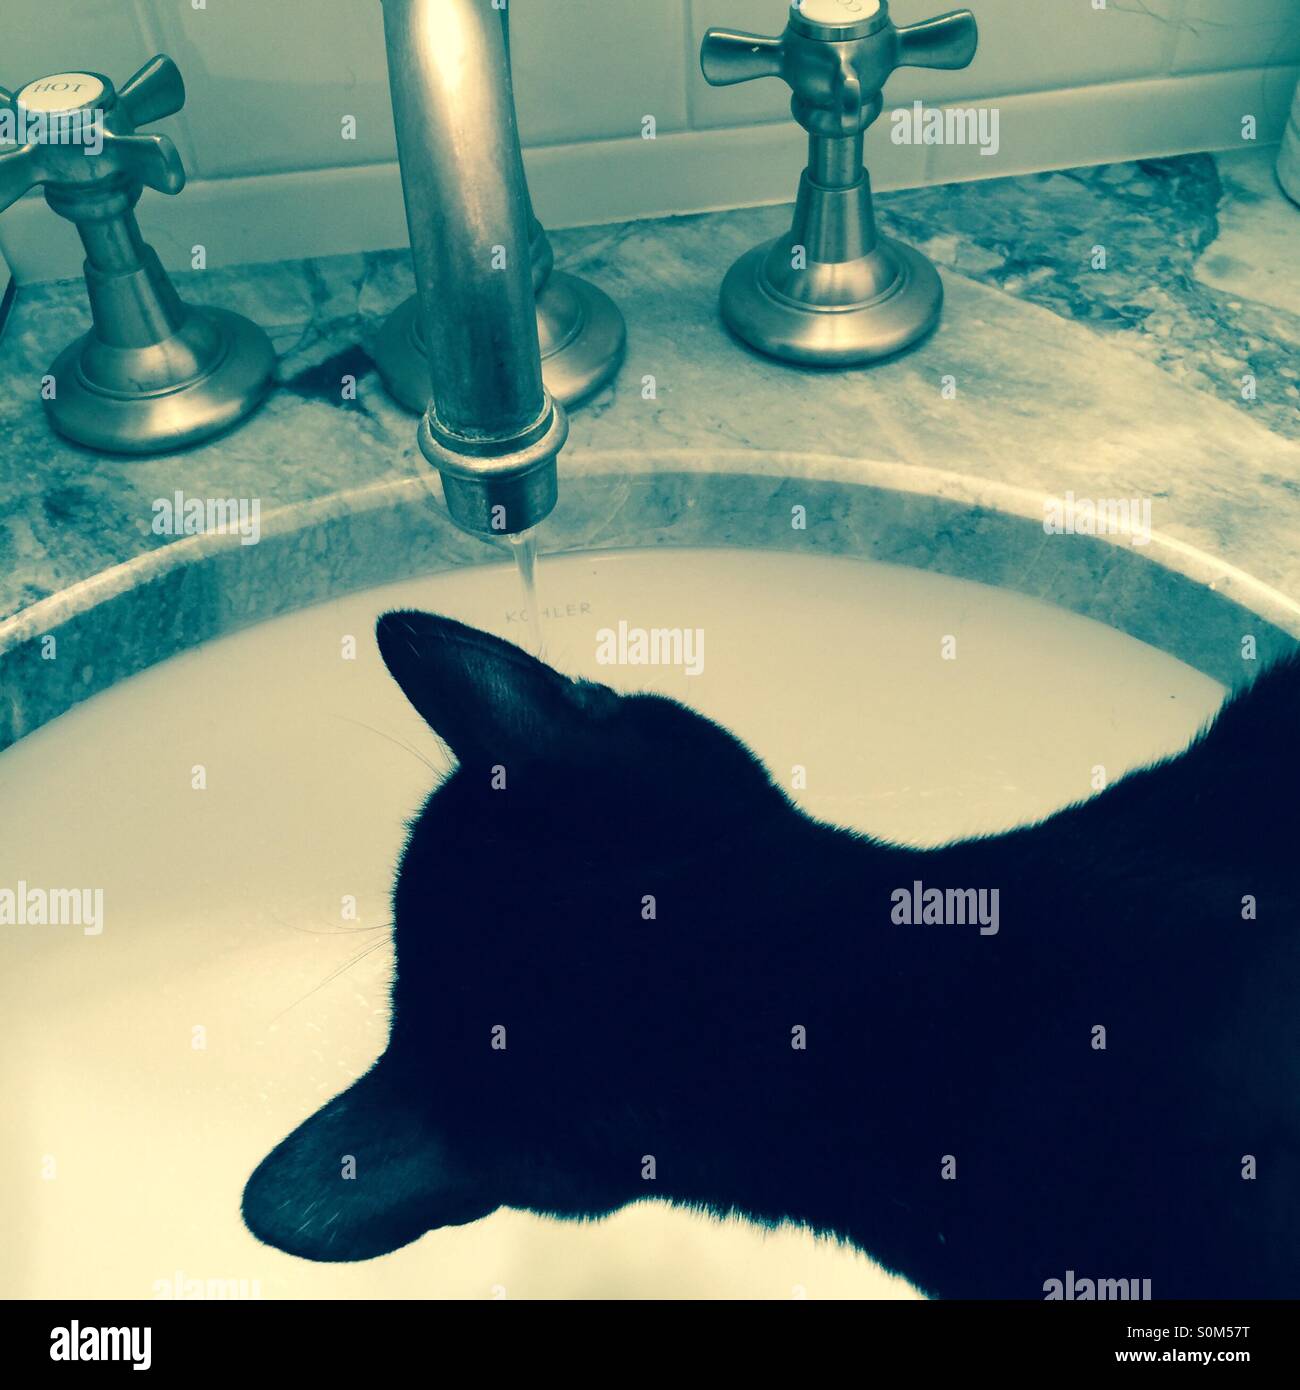 Gato de beber agua de grifo de fregadero Foto de stock